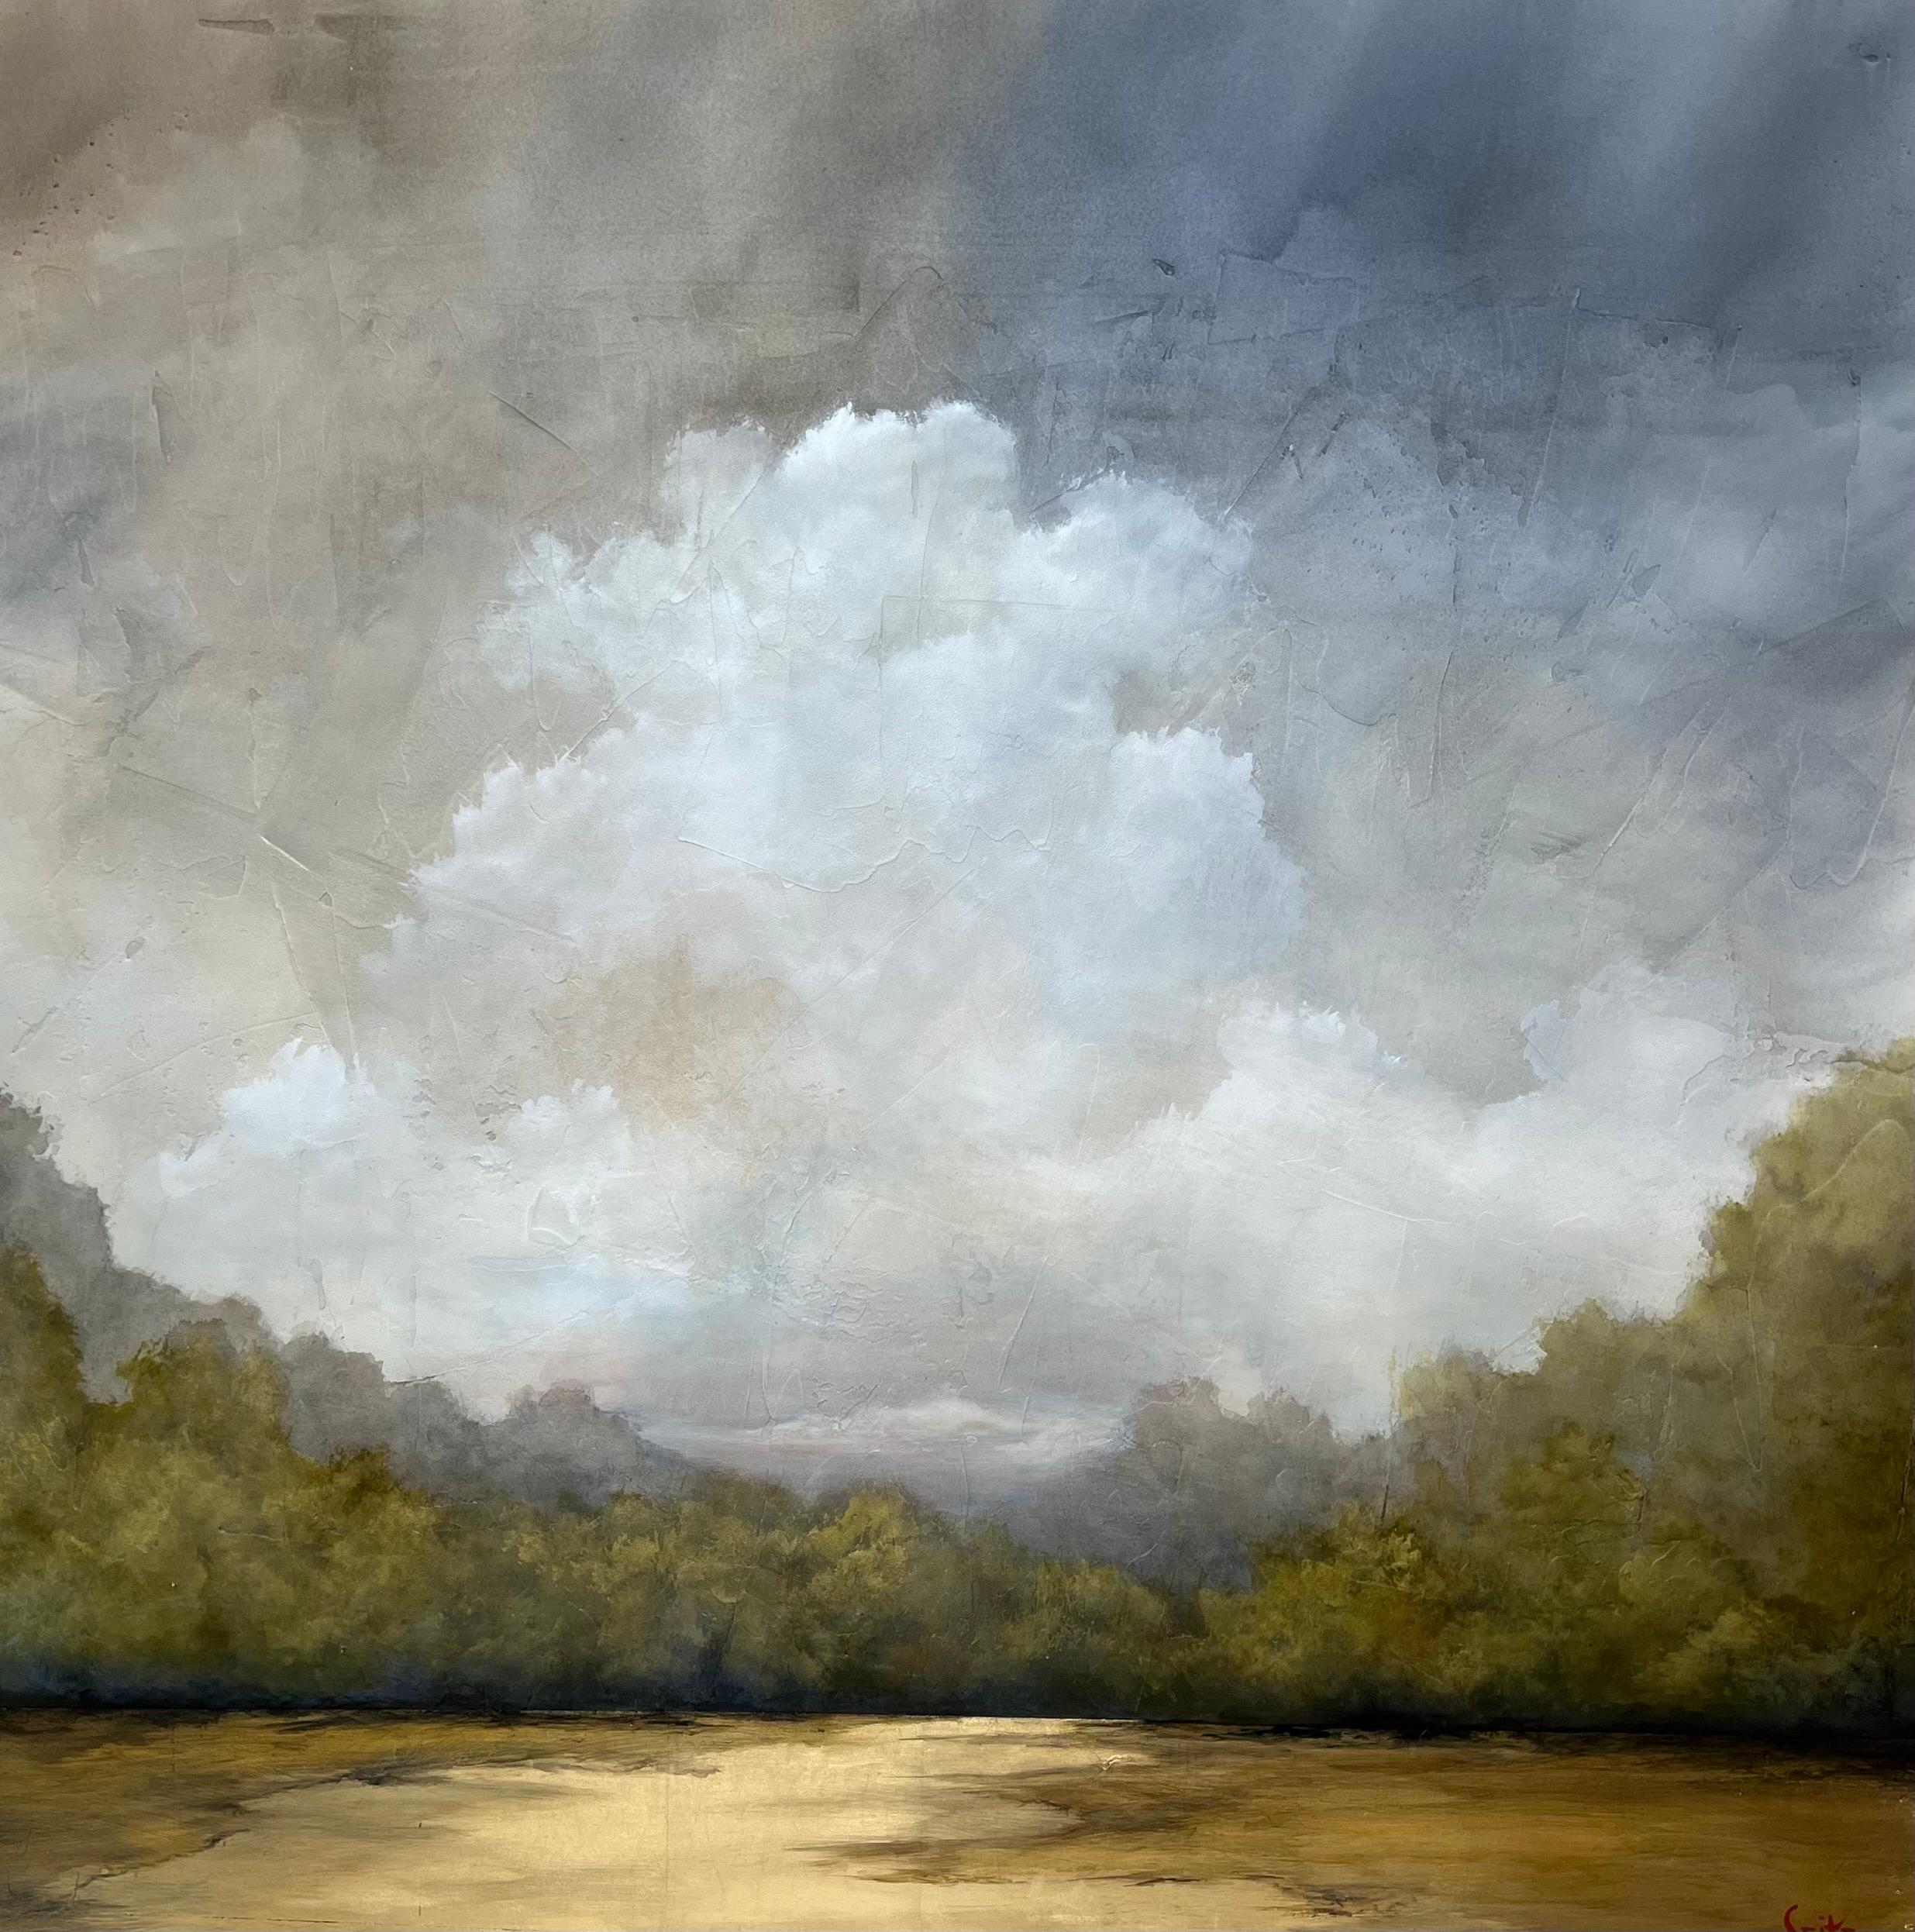 'Tomorrow's Gift' est une grande peinture de paysage en acrylique et feuille d'or sur toile de format vertical créée par l'artiste américain Jim Seitz en 2022. Doté d'une palette d'or, de gris et de bleu, le tableau accorde une grande importance au